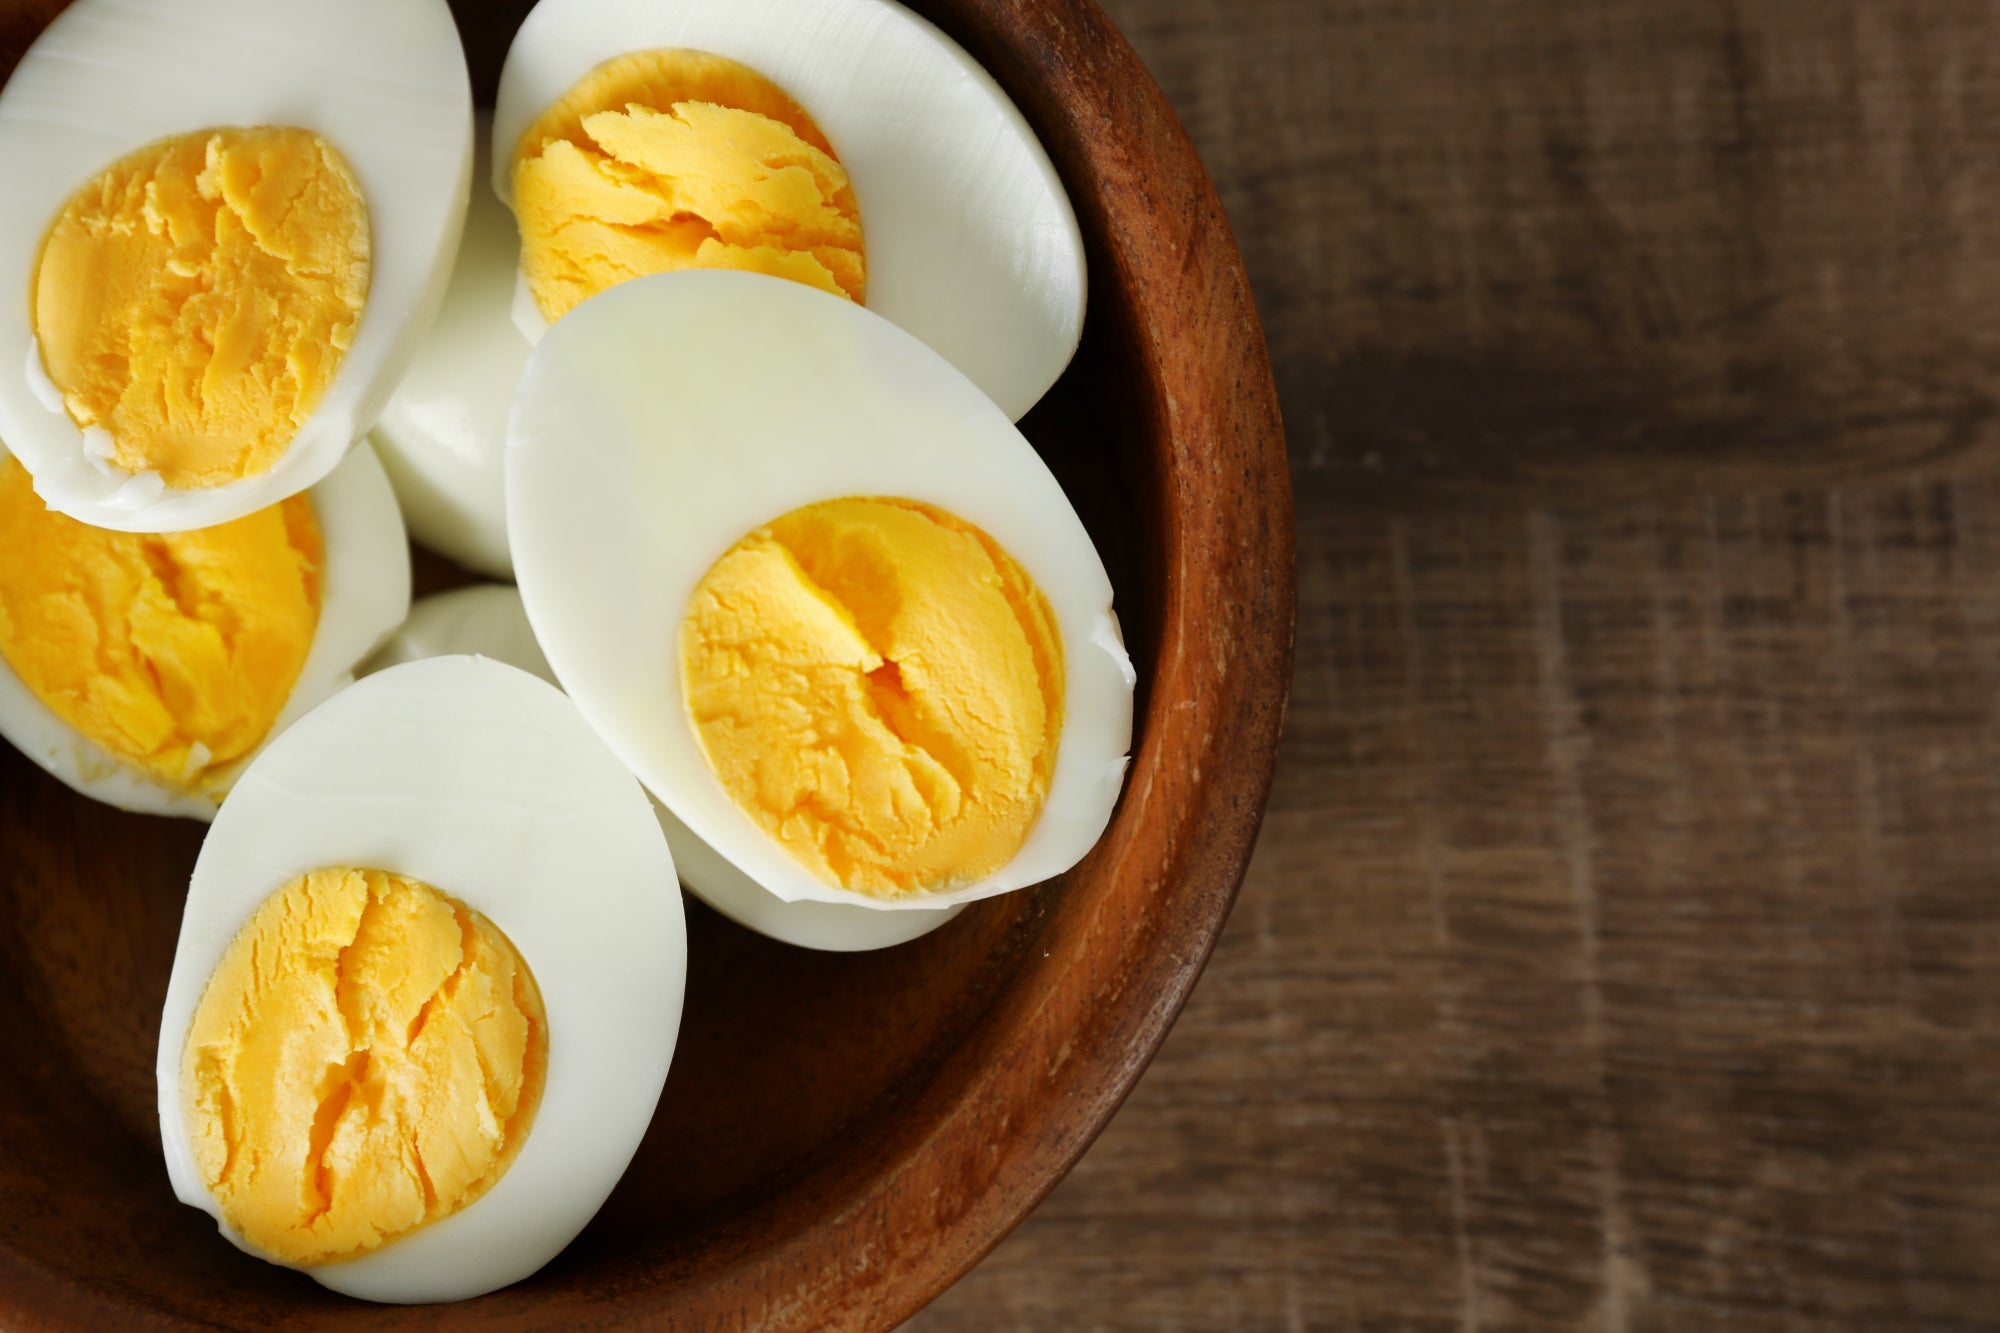 Cuire des œufs à la coque faciles à éplucher.